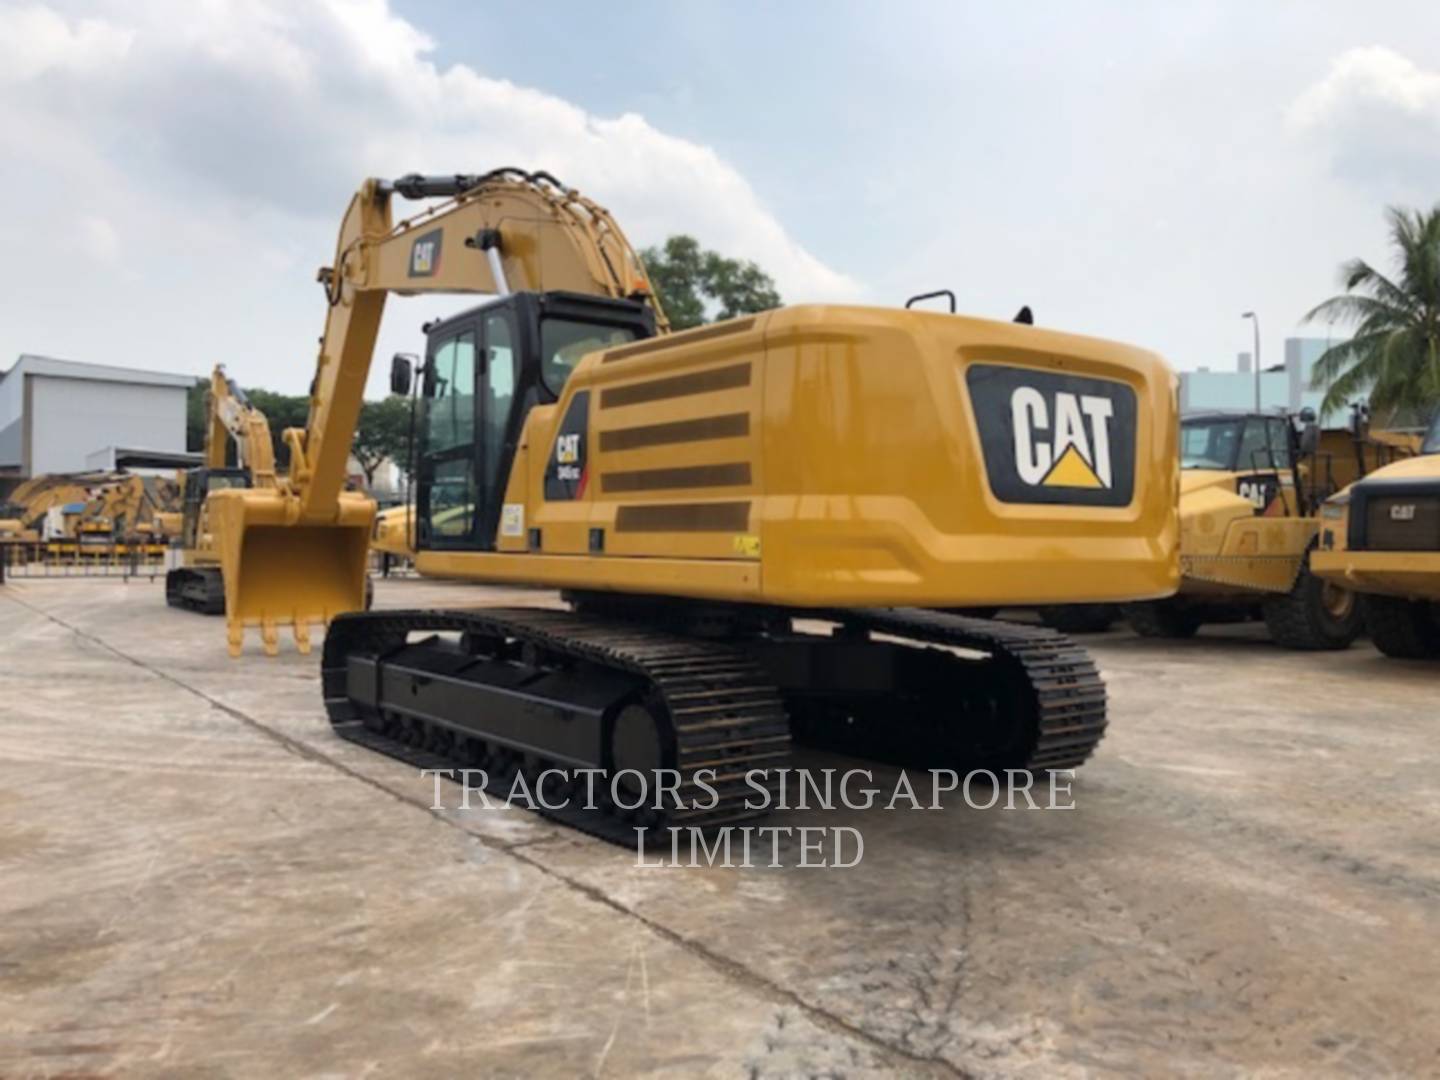 wtk?JHNyYz05YzU3MGY0NGYwM2VhNGRmYWYxY2E3N2VjMjEyZTk5MyYkdHh0PVRSQUNUT1JTJTIwU0lOR0FQT1JFJTIwTElNSVRFRCY2Mjg3Mg== 345-07GC | Tractors Singapore